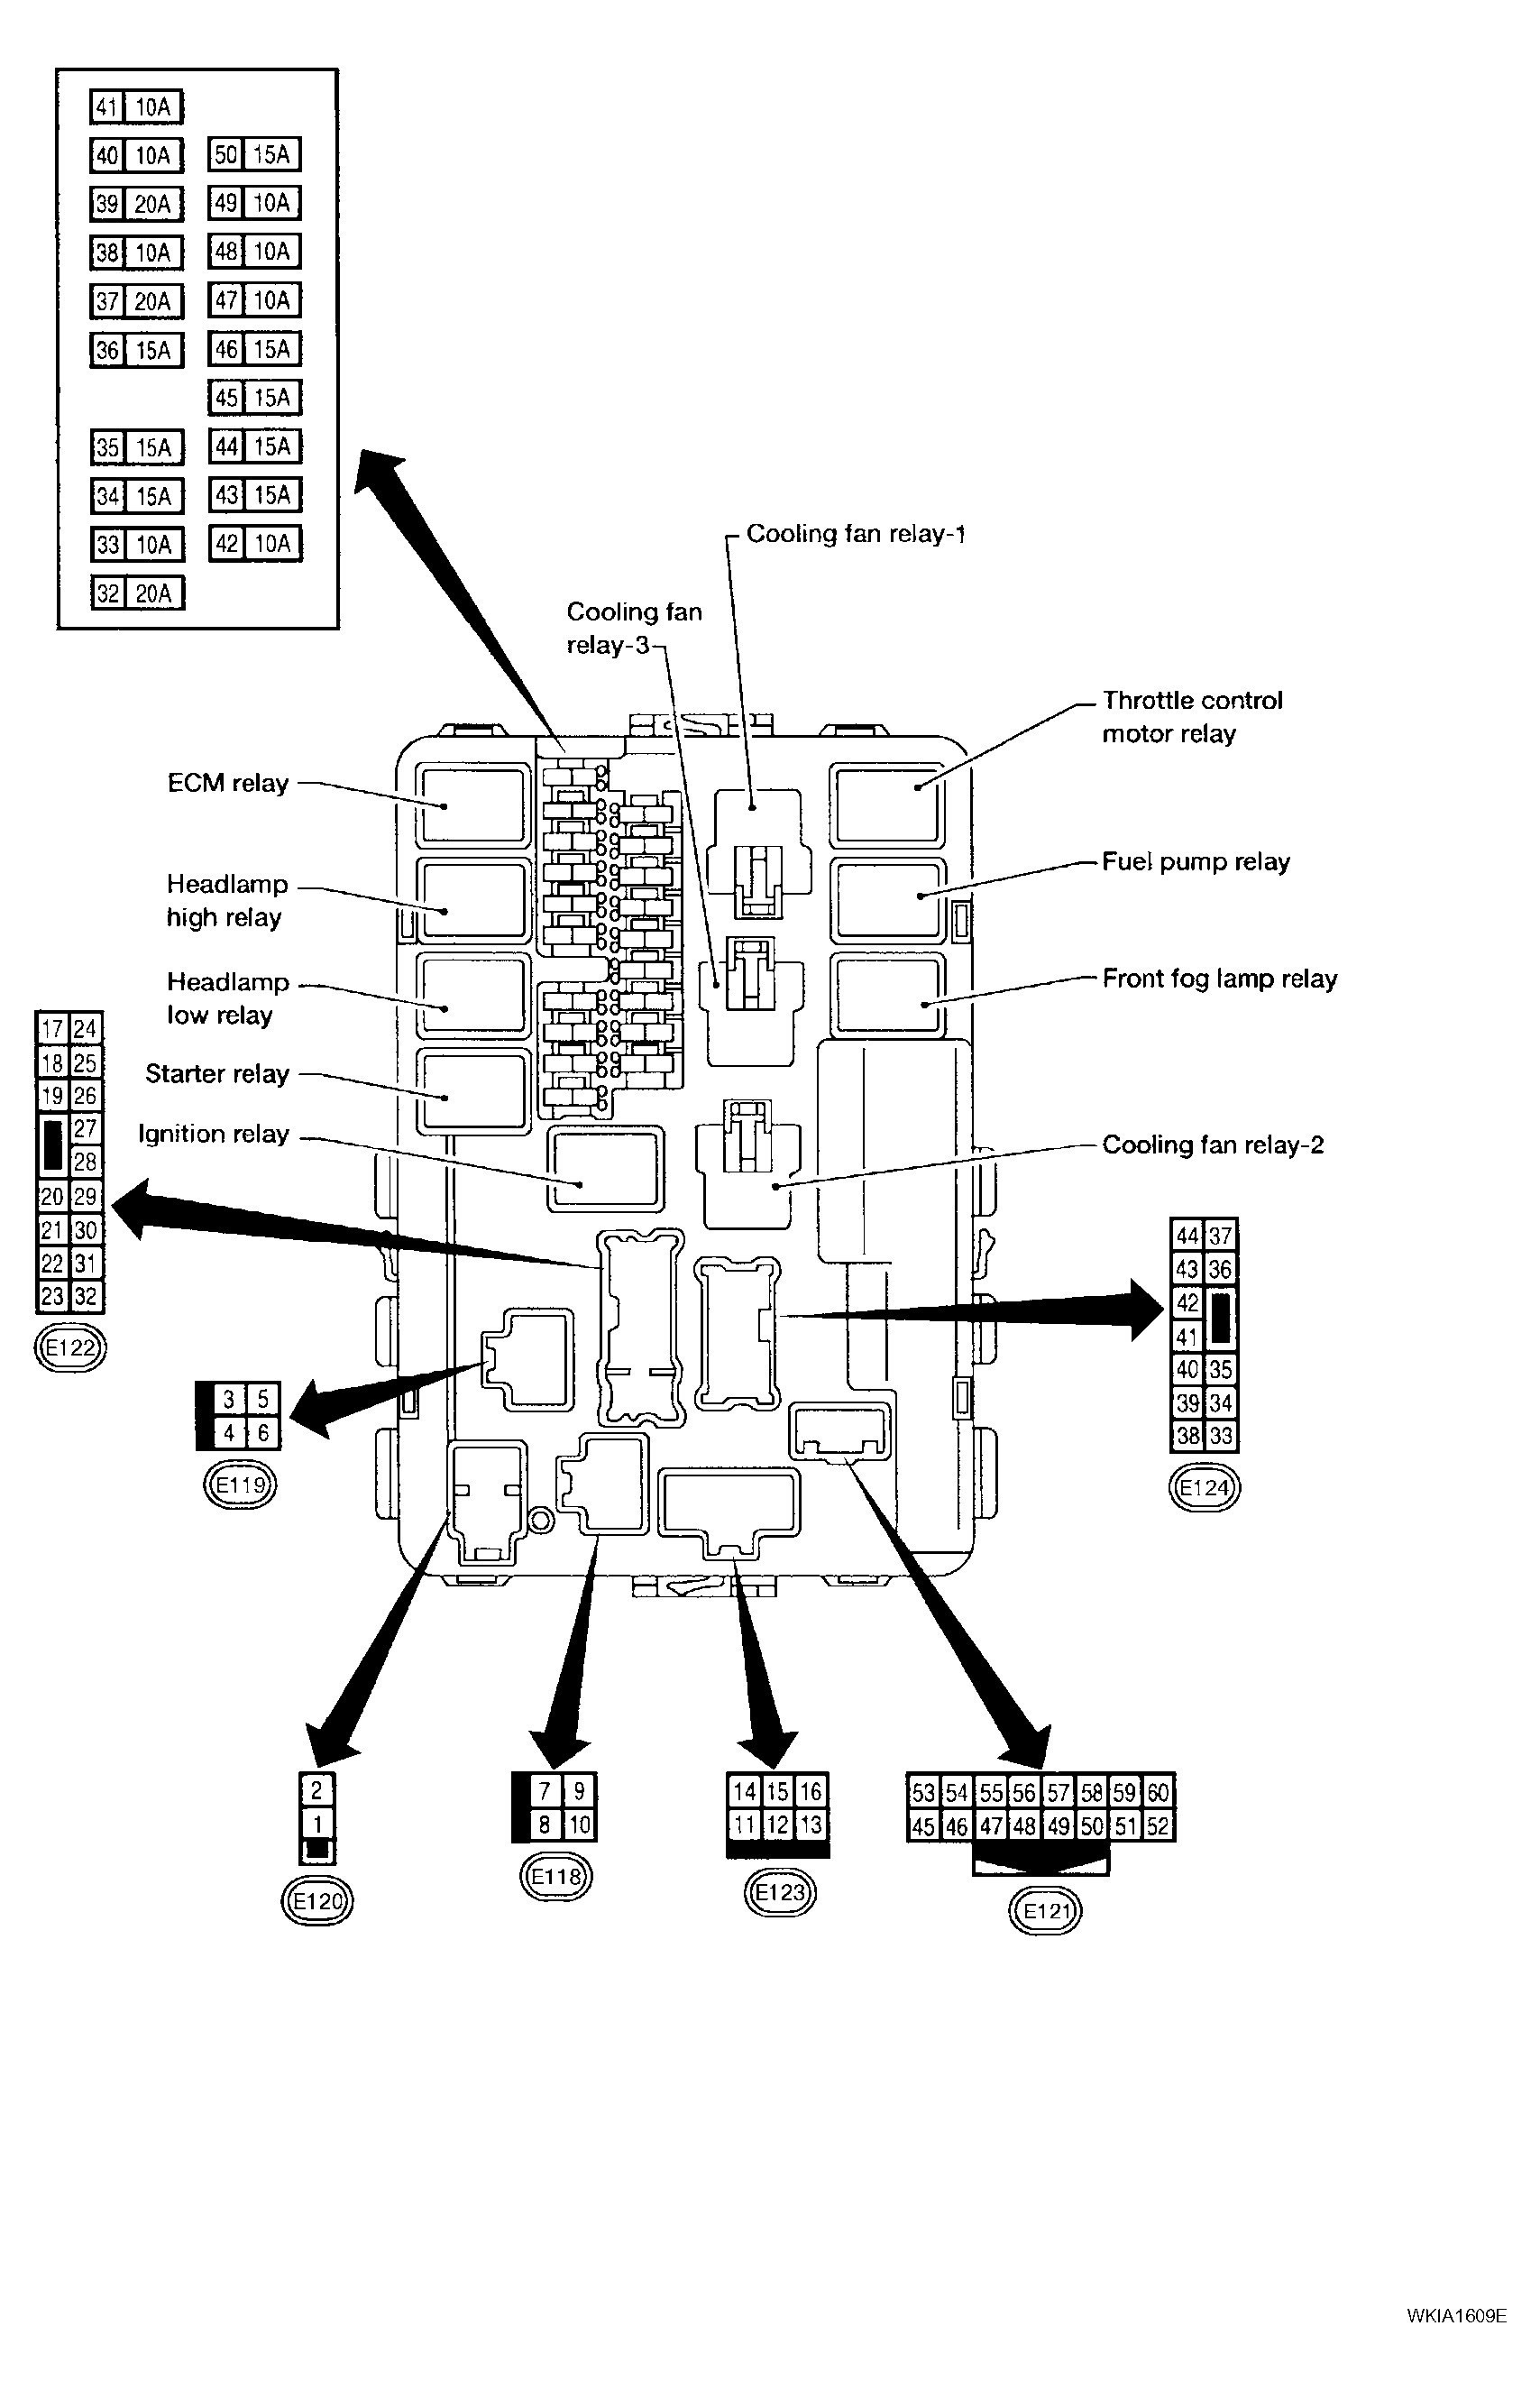 g35 ipdm diagram wiring diagram 2004 g35 ipdm diagram 04 g35 ipdm diagram wiring diagram repair